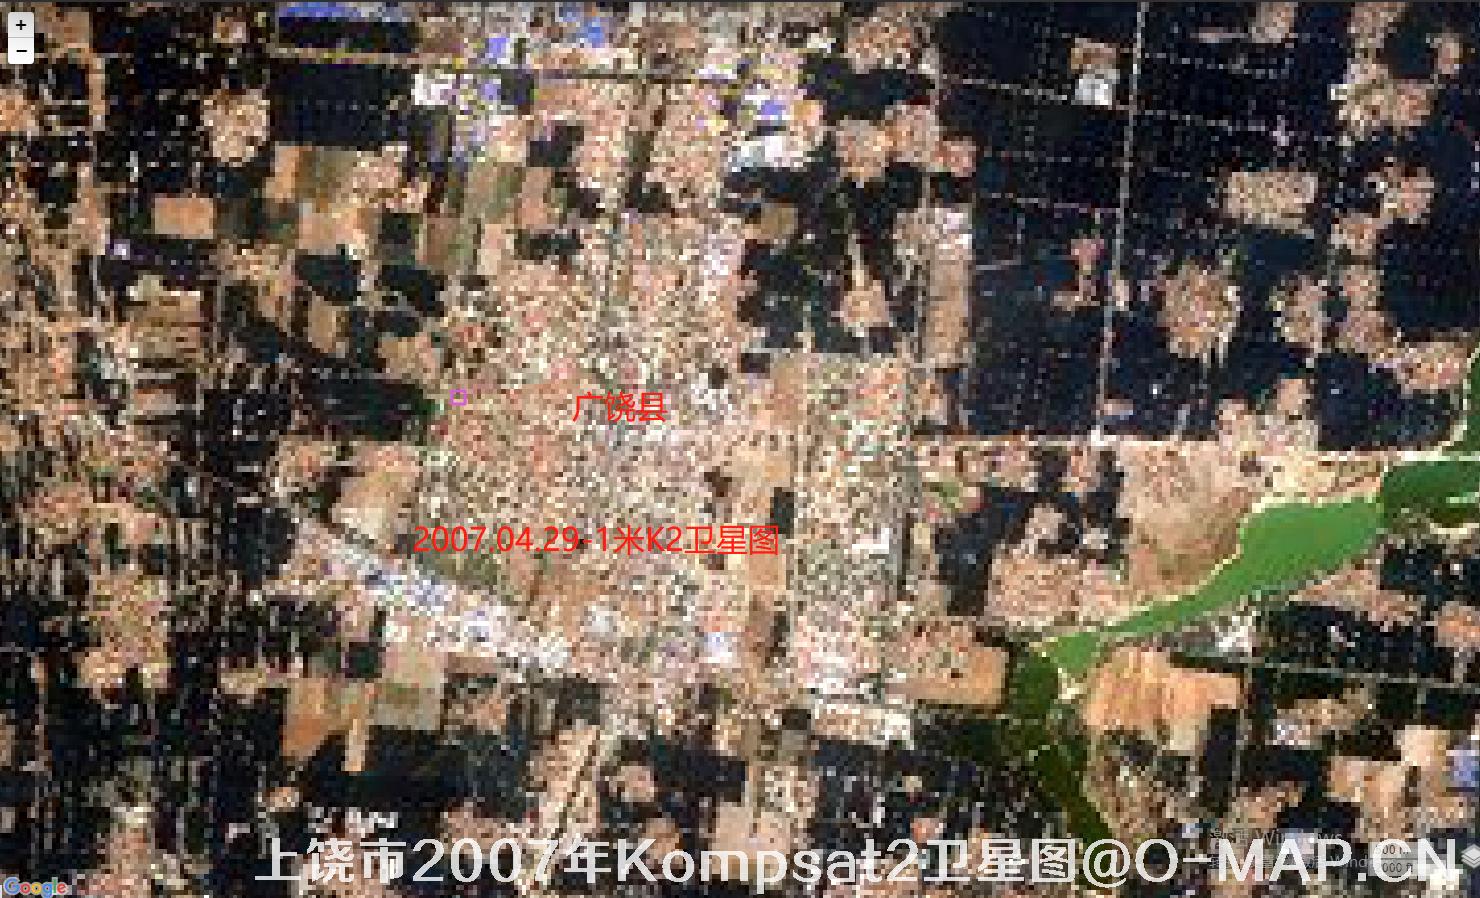 江西省上饶市2007年Kompat2卫星图